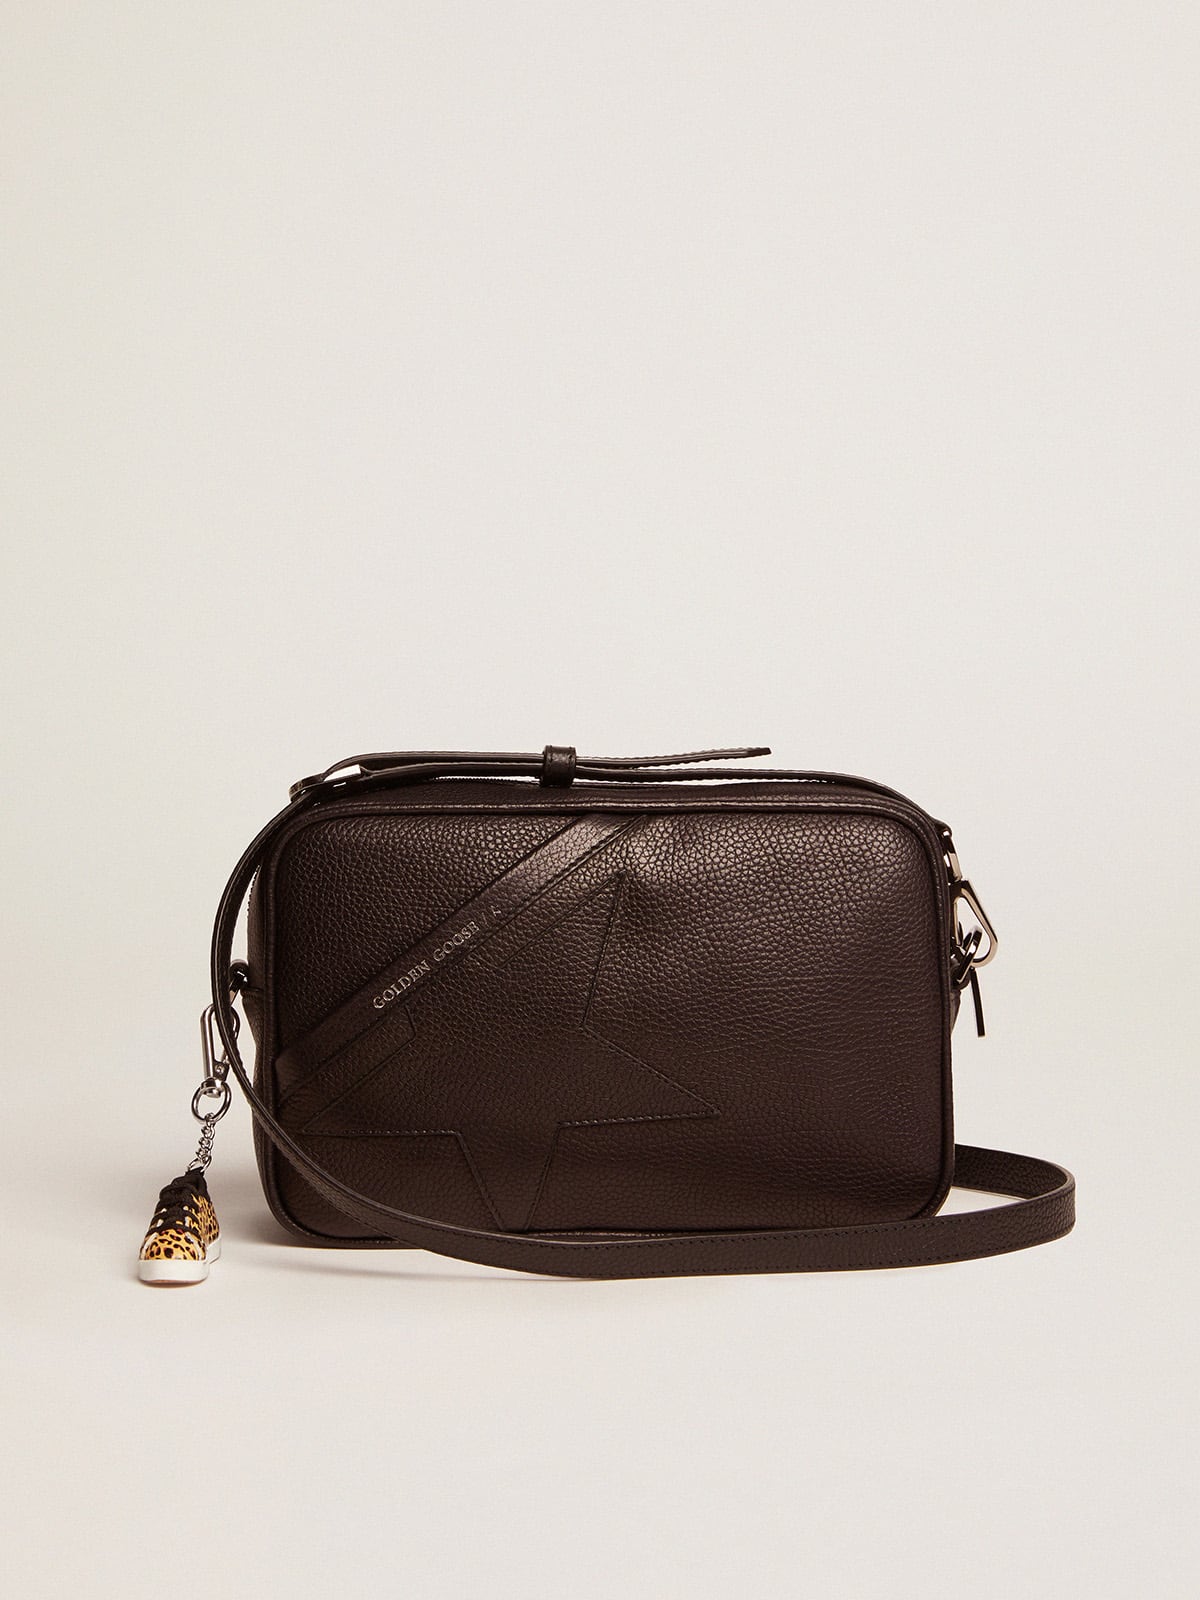 Golden Goose Star Bag In Black Leather GBP465.0